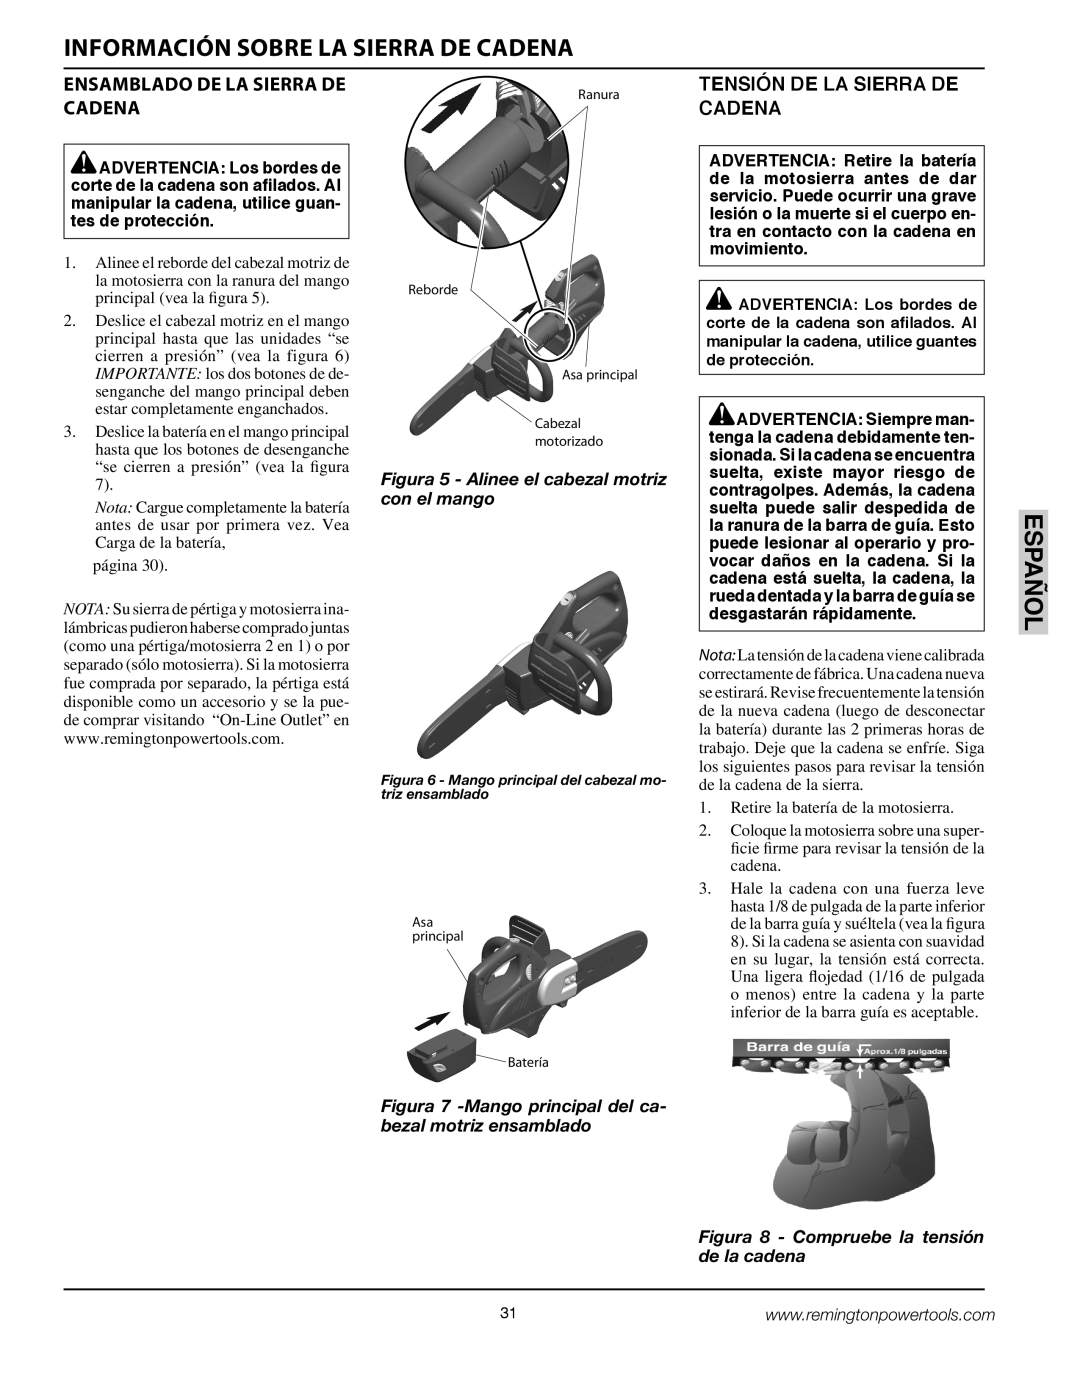 Remington BS188A, BPS188A owner manual Información Sobre La Sierra De Cadena, Español, Ensamblado De La Sierra De Cadena 